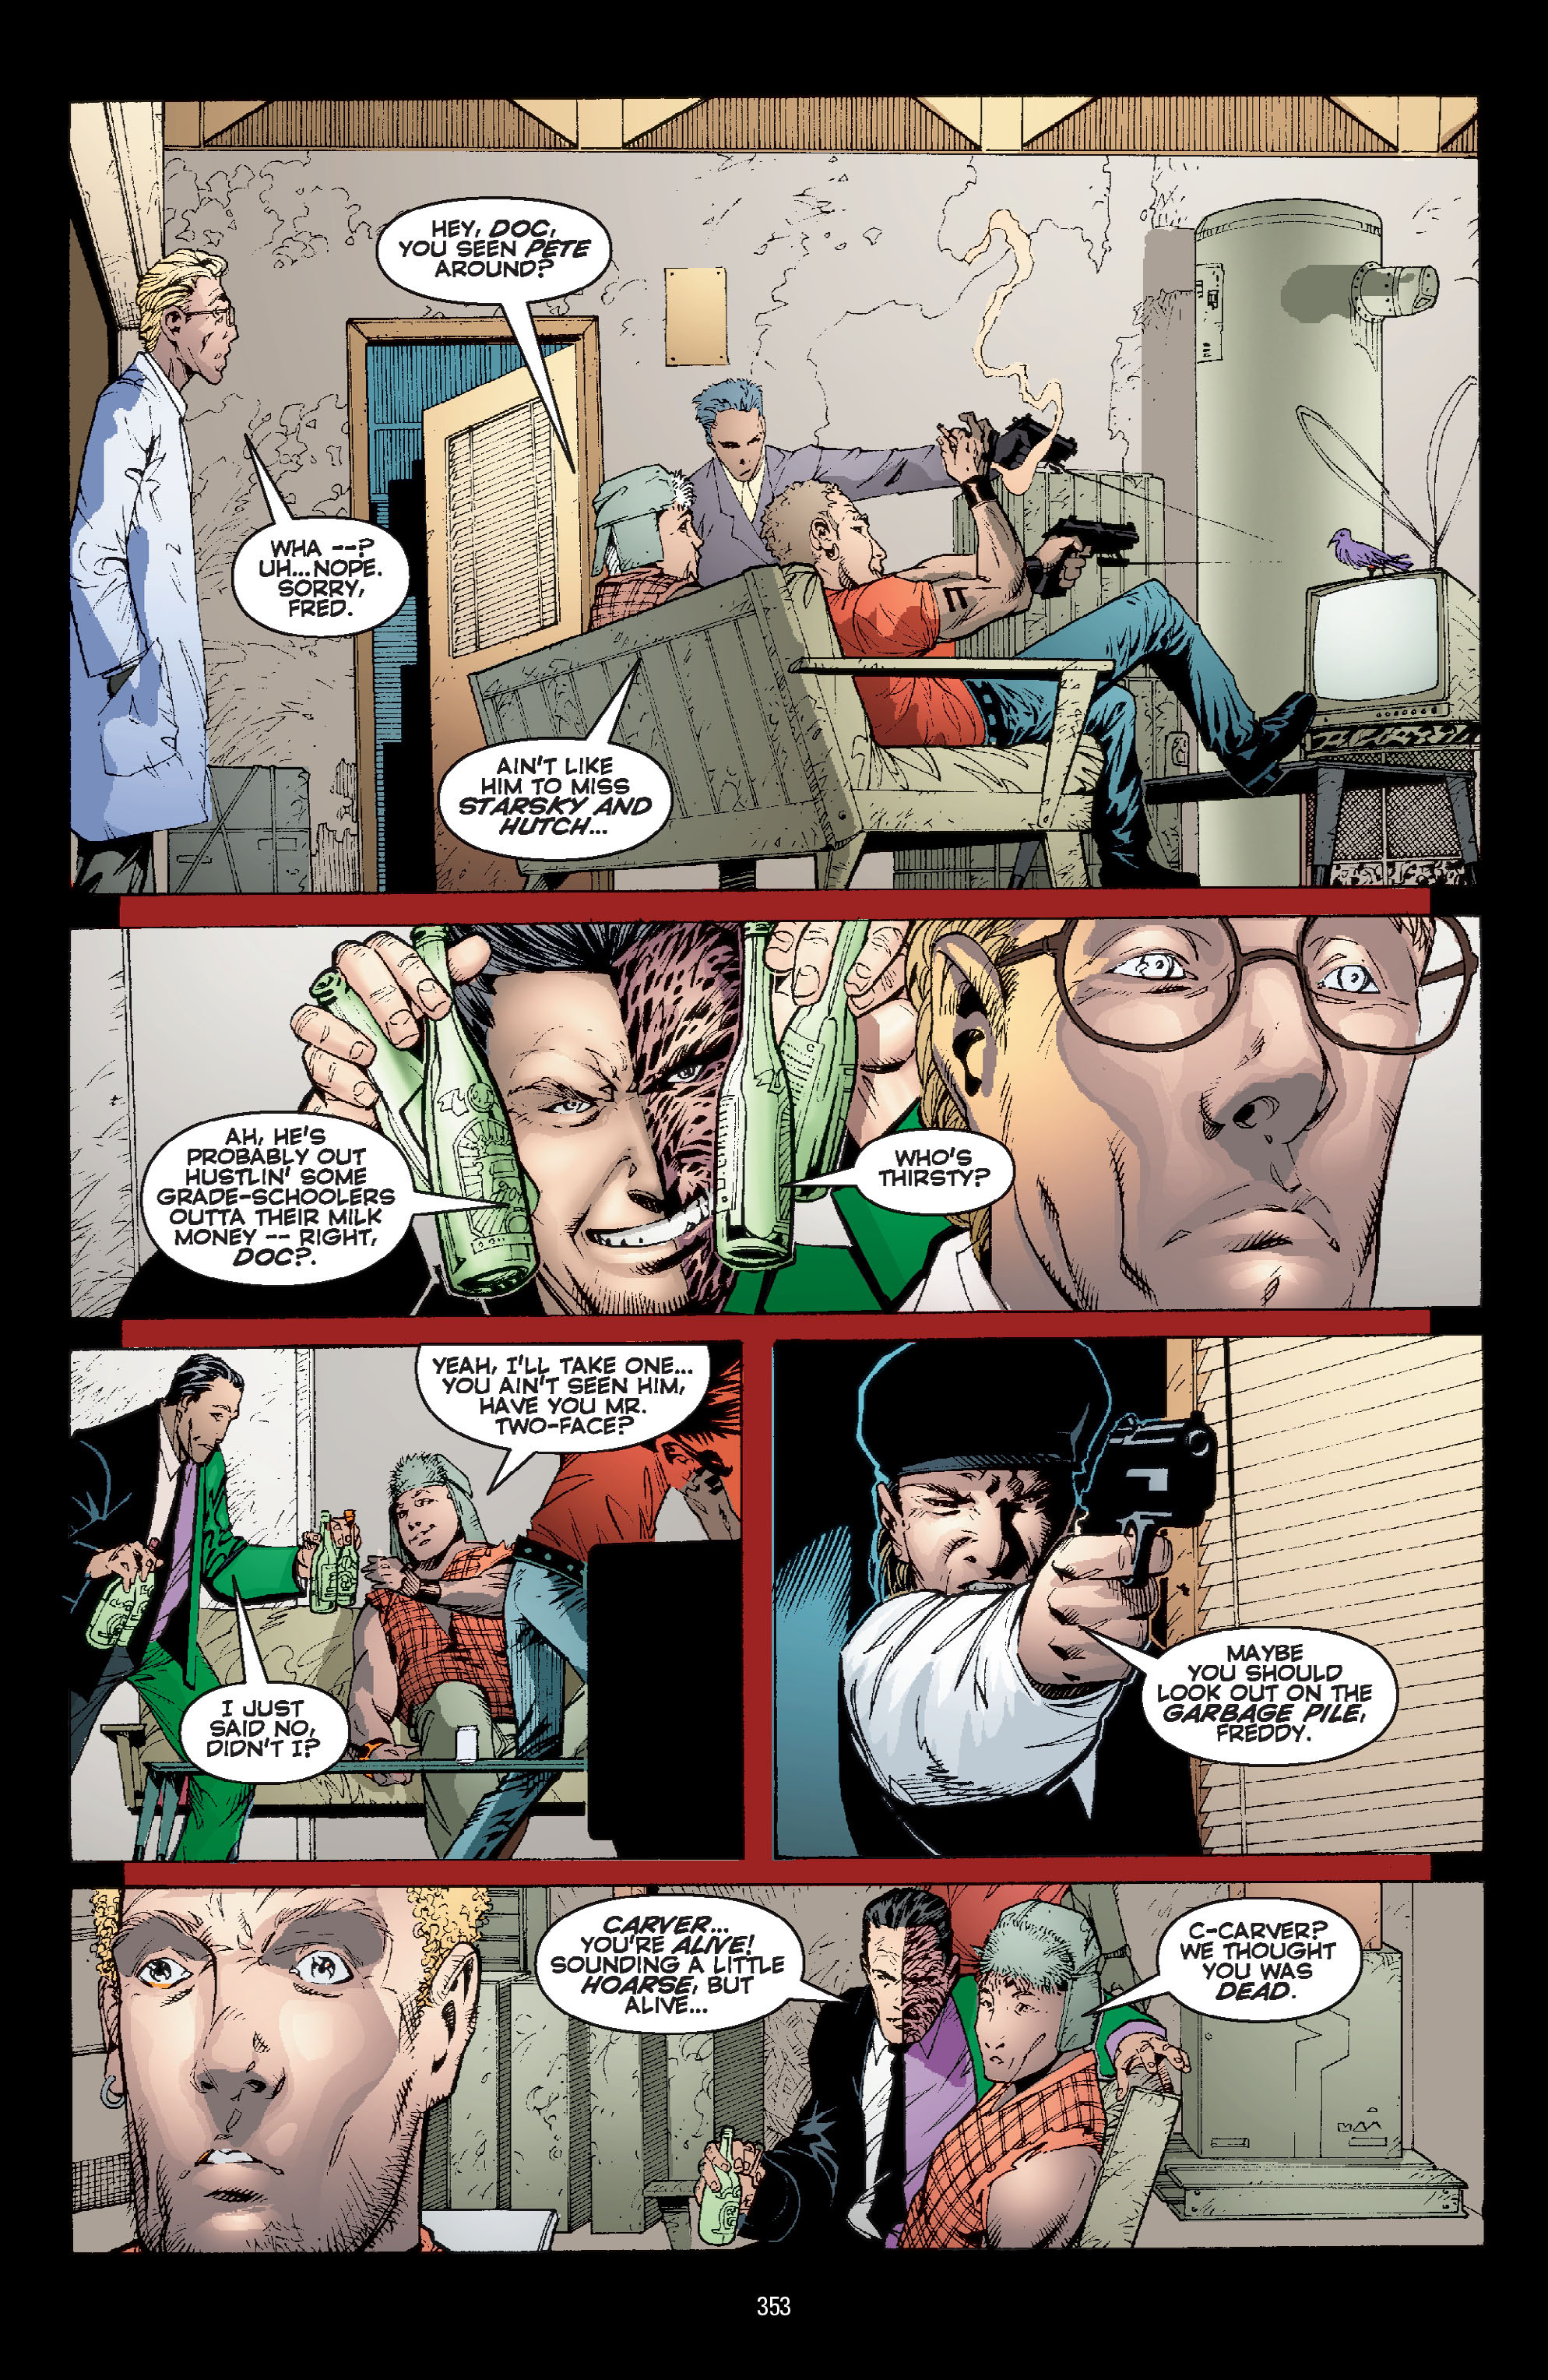 DC Comics/Dark Horse Comics: Justice League Full #1 - English 343